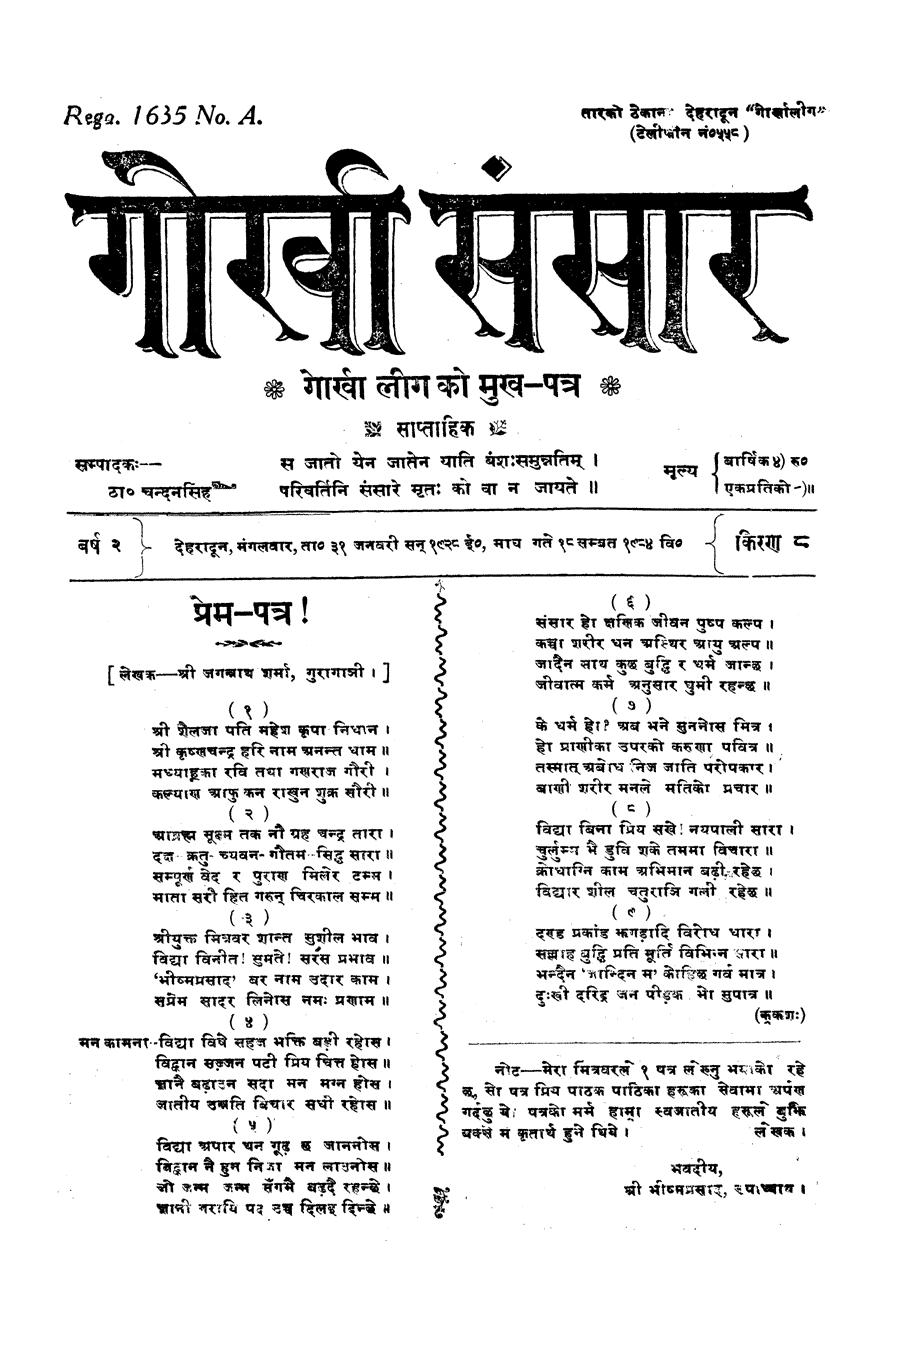 Gorkha Sansar, 31 Jan 1928, page 1